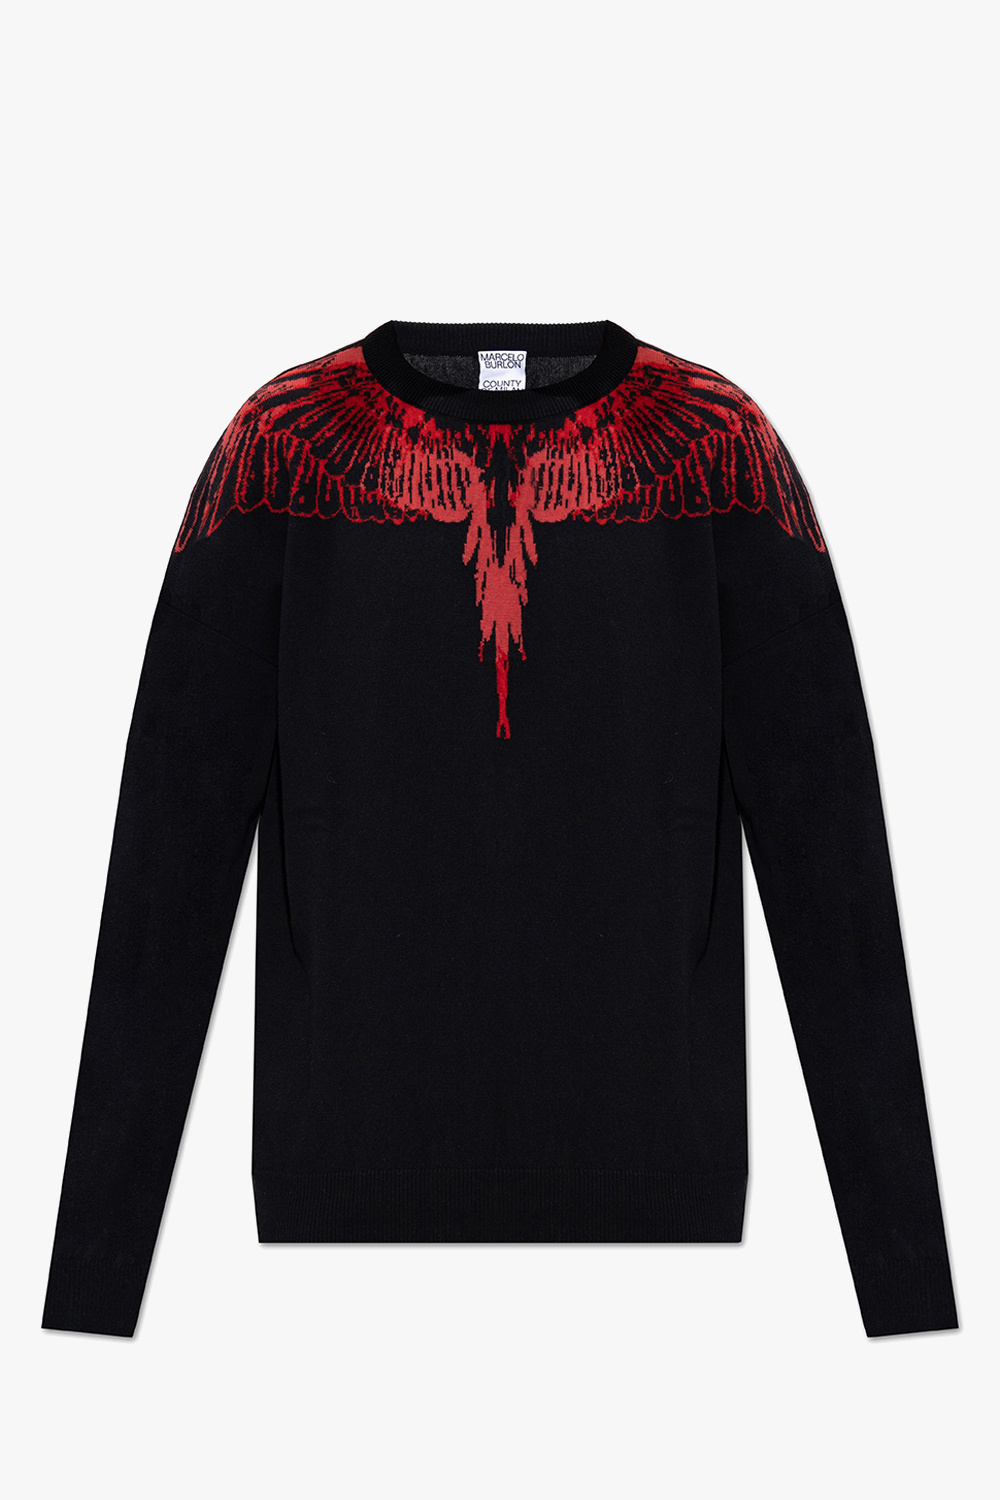 Marcelo Burlon Embroidered sweater